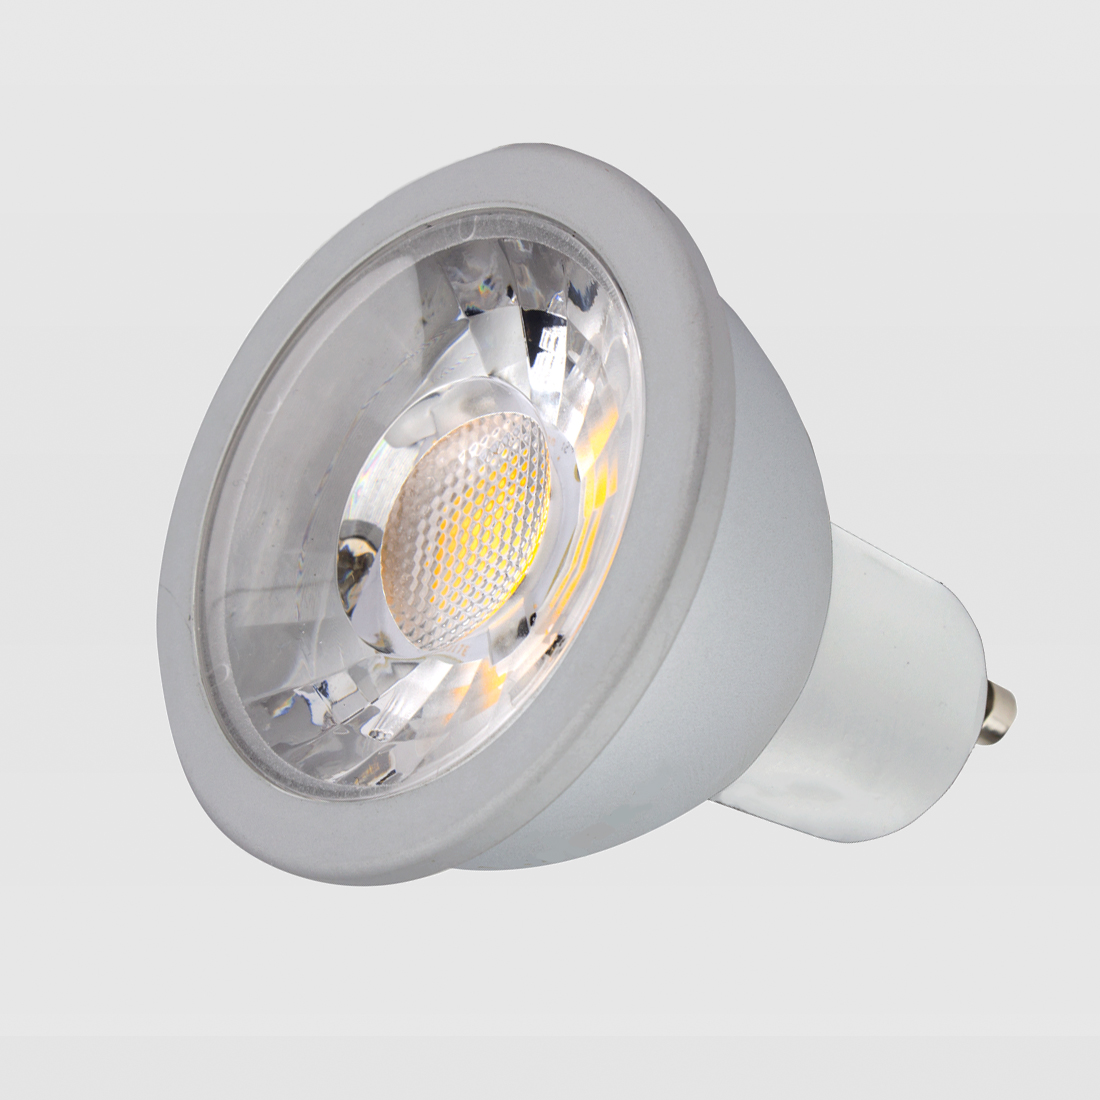 LED GU10 Dimmable Spotlight Bulb - 6w